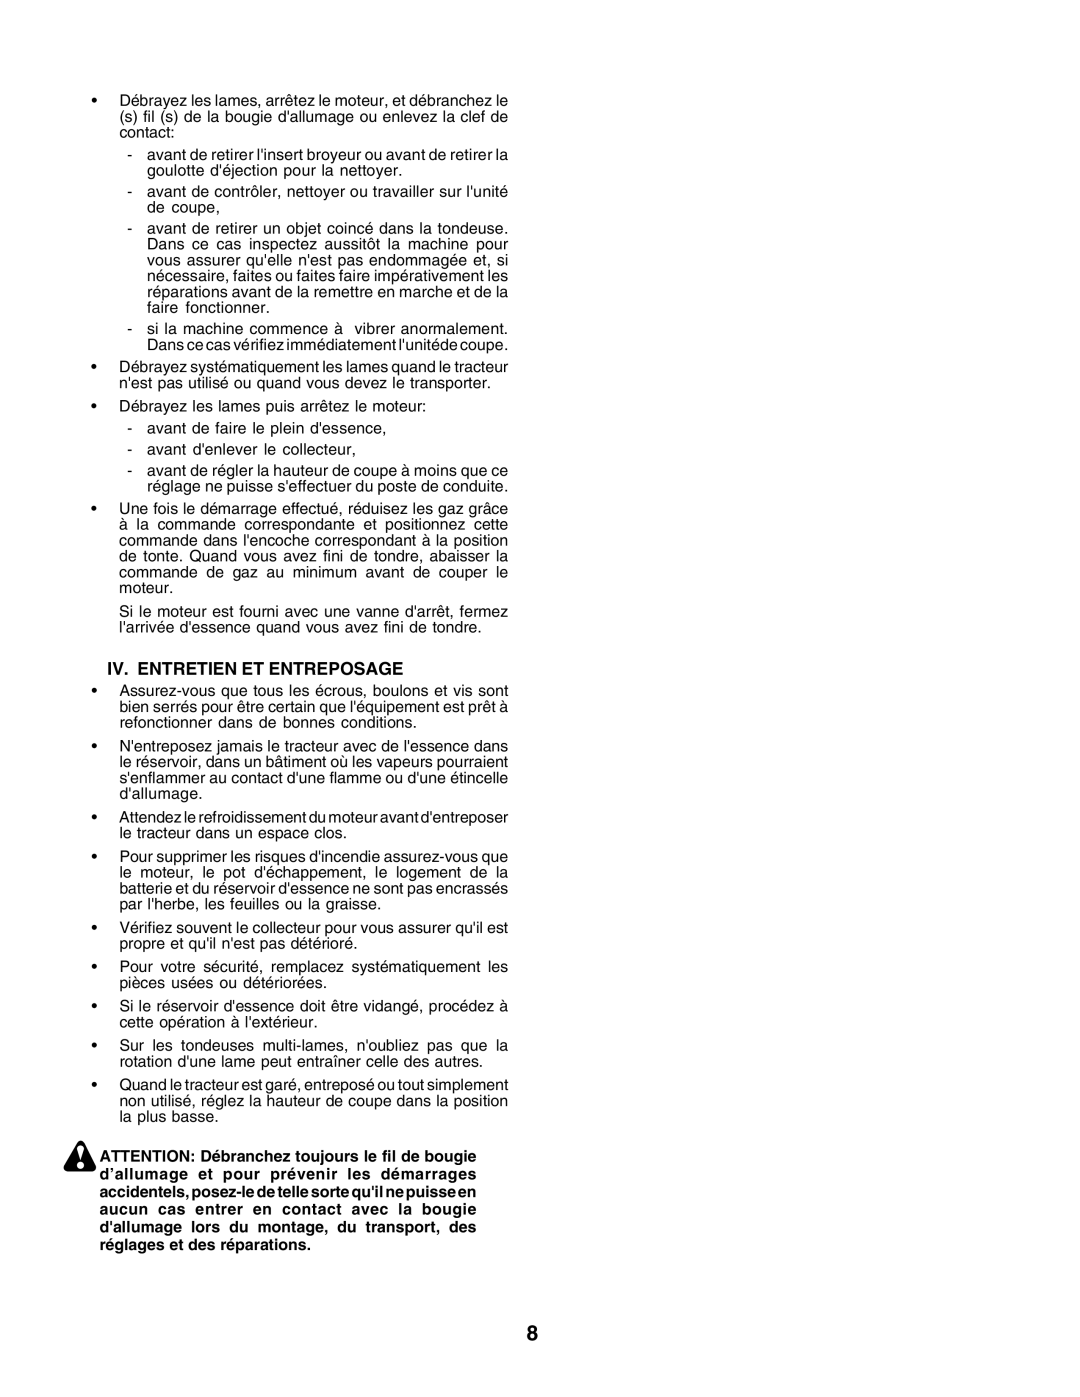 Husqvarna GTH250 instruction manual Iv. Entretien Et Entreposage 